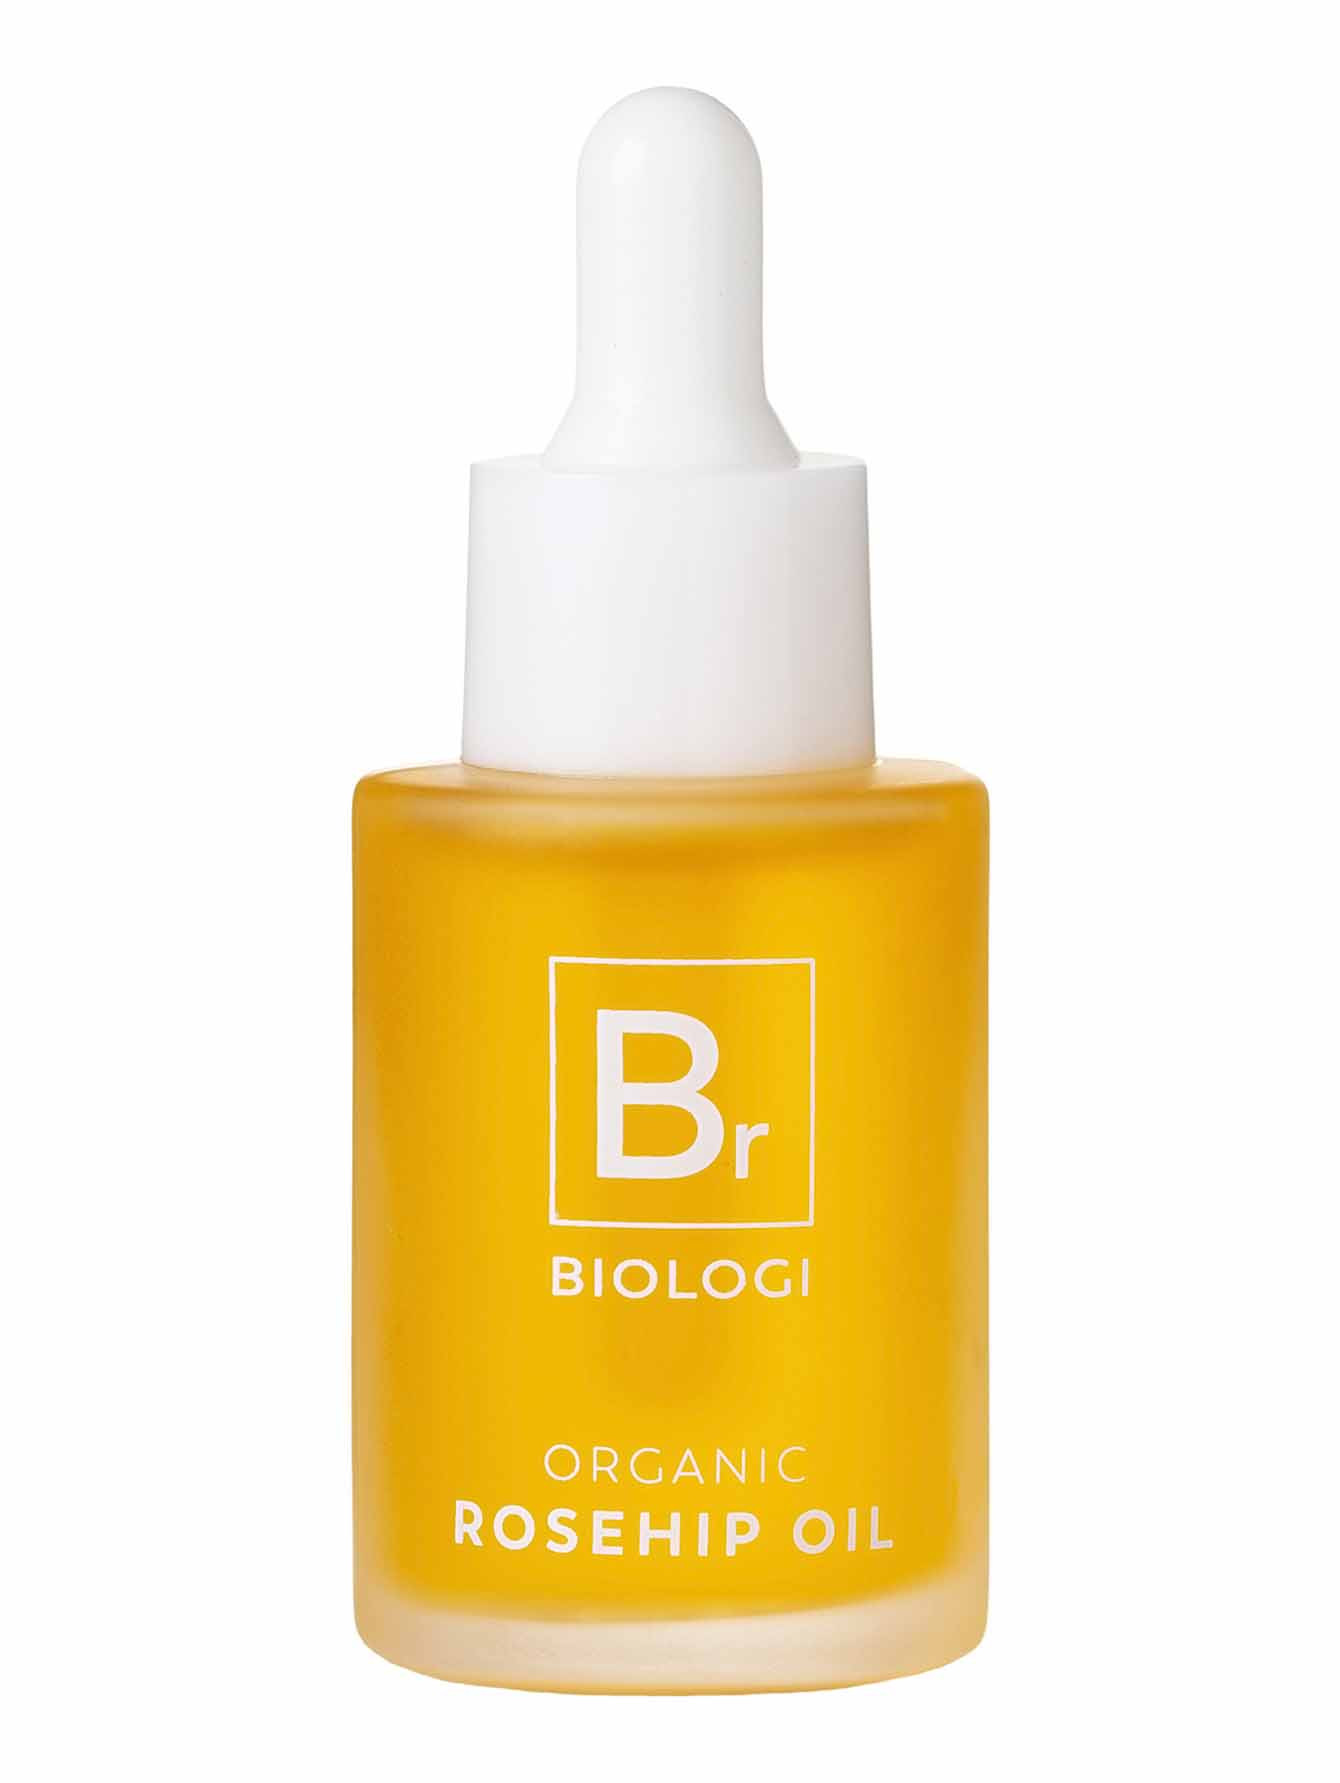 Органическое масло шиповника для лица Br Organic Rosehip Oil, 30 мл - Общий вид